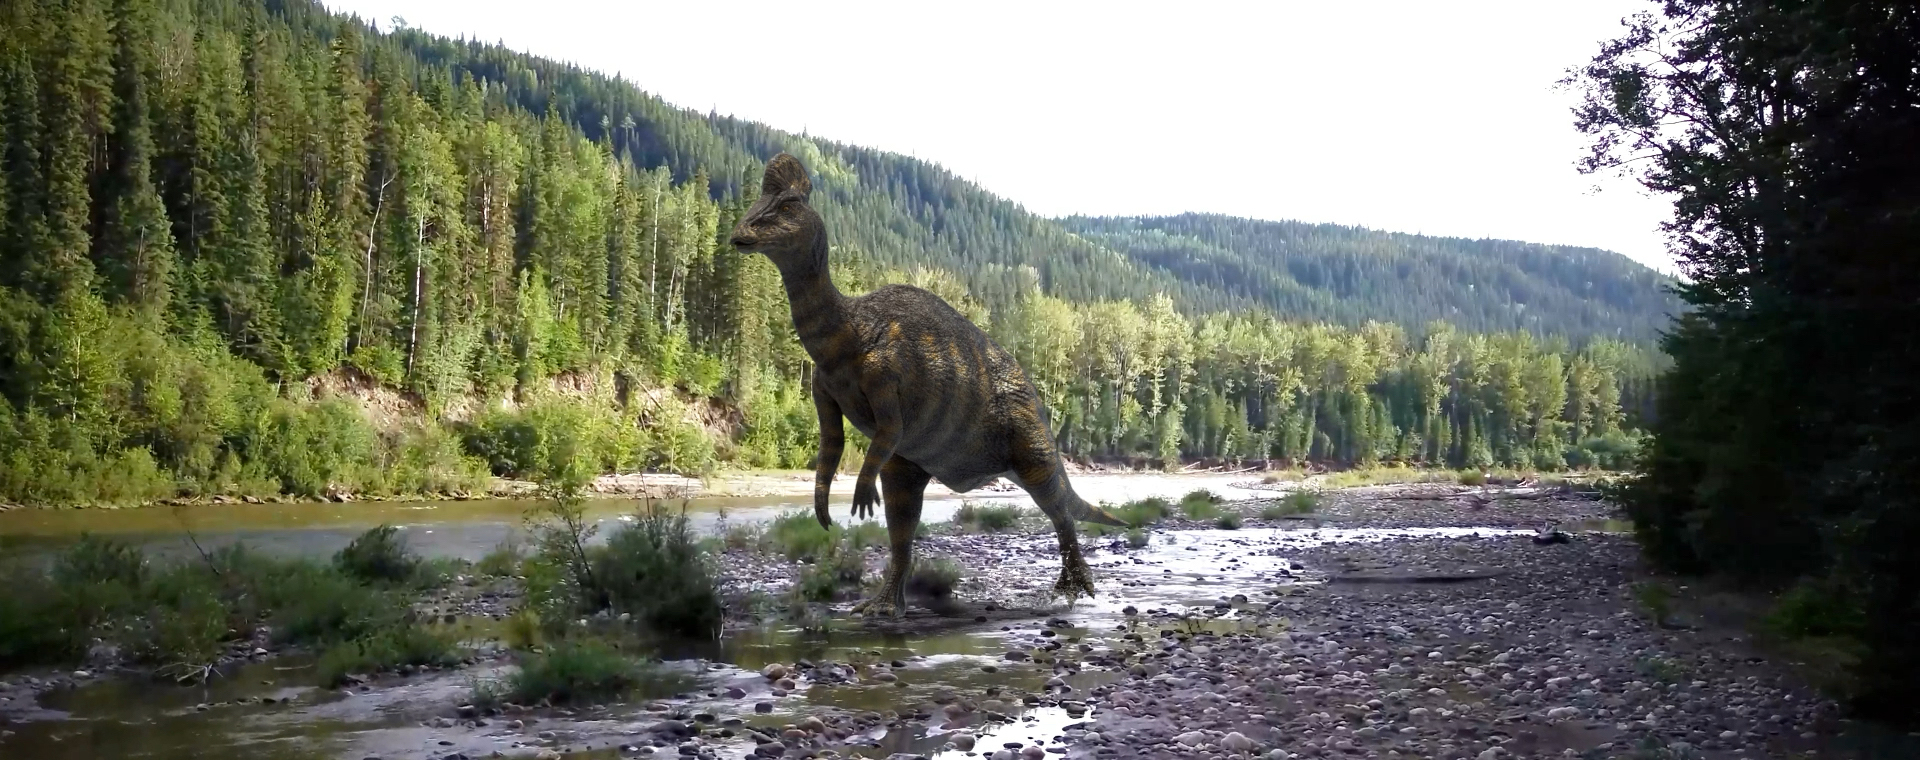 Un Corythosaurus jaune et vert marche sur deux pattes le long d’une rive boueuse parsemée de roches. La rivière traverse une vallée boisée.